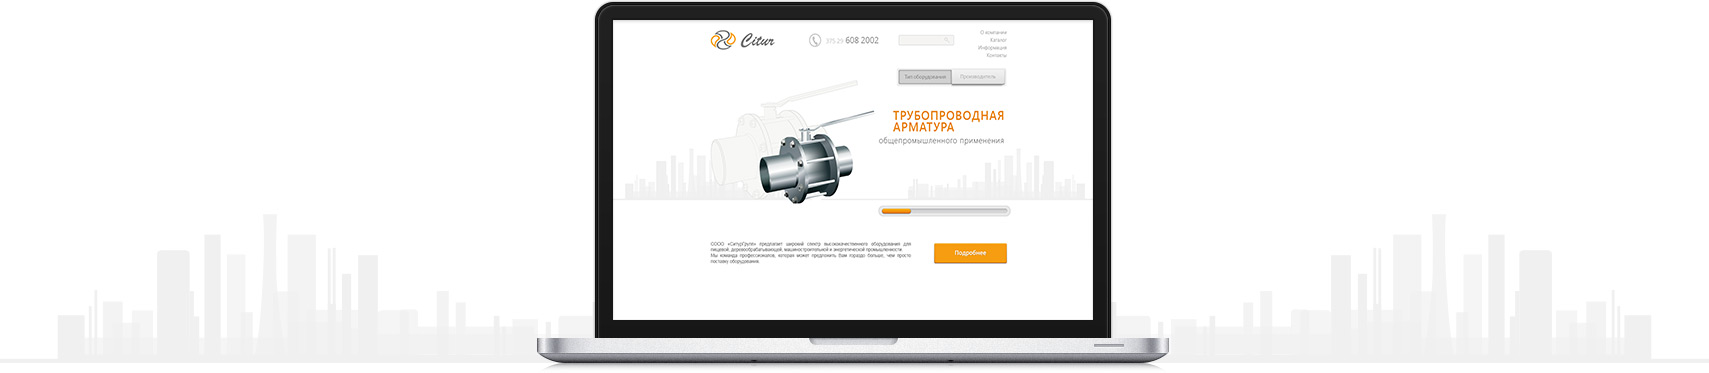 Разработка-сайта-белорусско-латвийского-поставщика-оборудования-Citur-